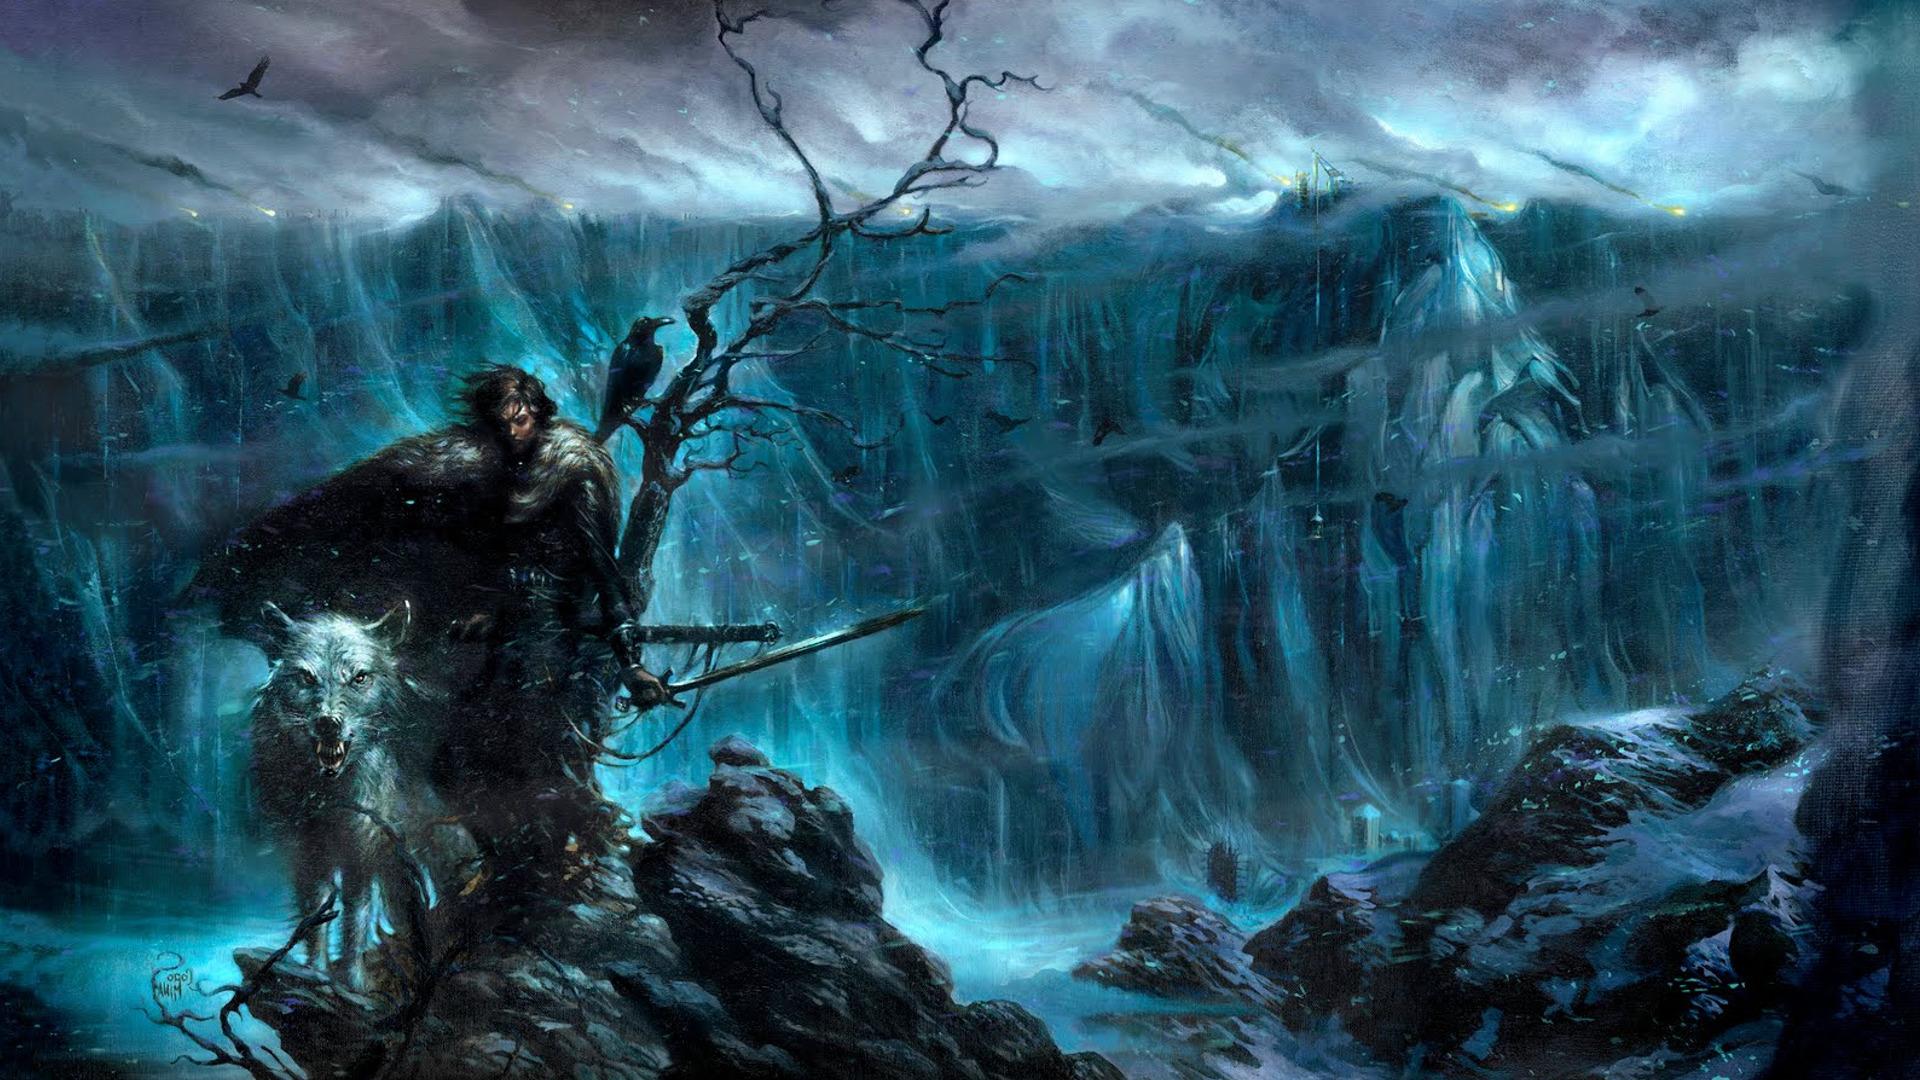 Game Of Thrones Wallpaper Jon Snow (46+), descargue 4K Wallpapers para